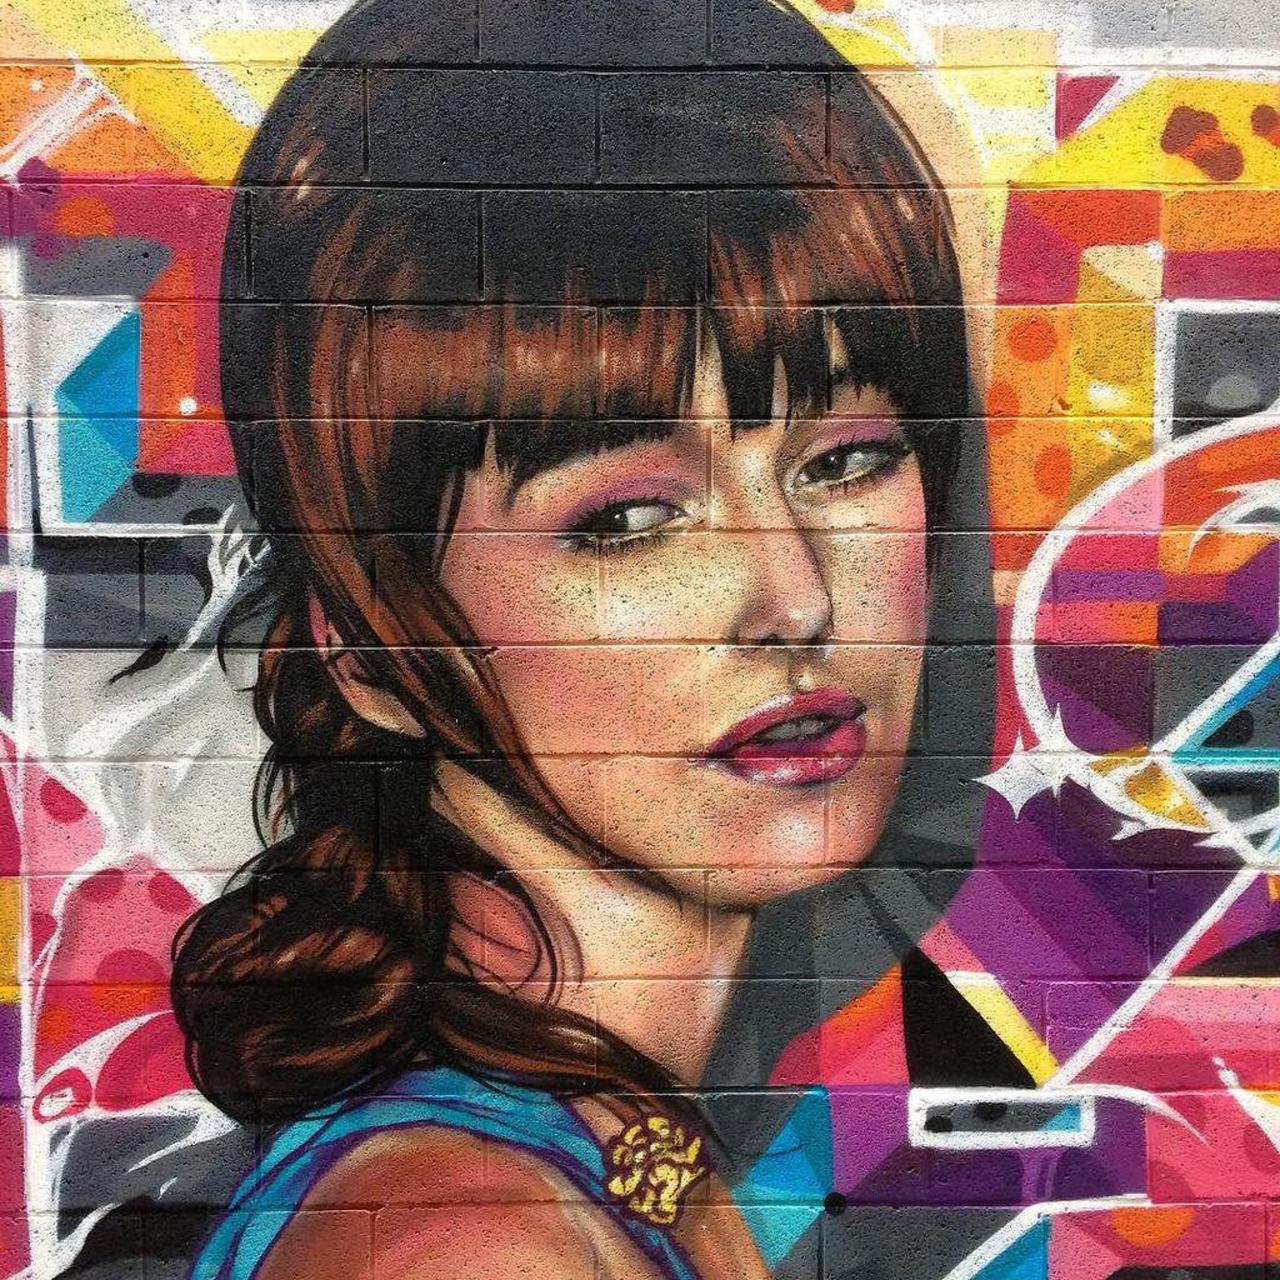 Ecto - Liege, Belgium #streetart #graffiti #mural #portrait #ecto #liege #luik #belgium http://ift.tt/1N3fYkP http://t.co/HRmS3jyDJi